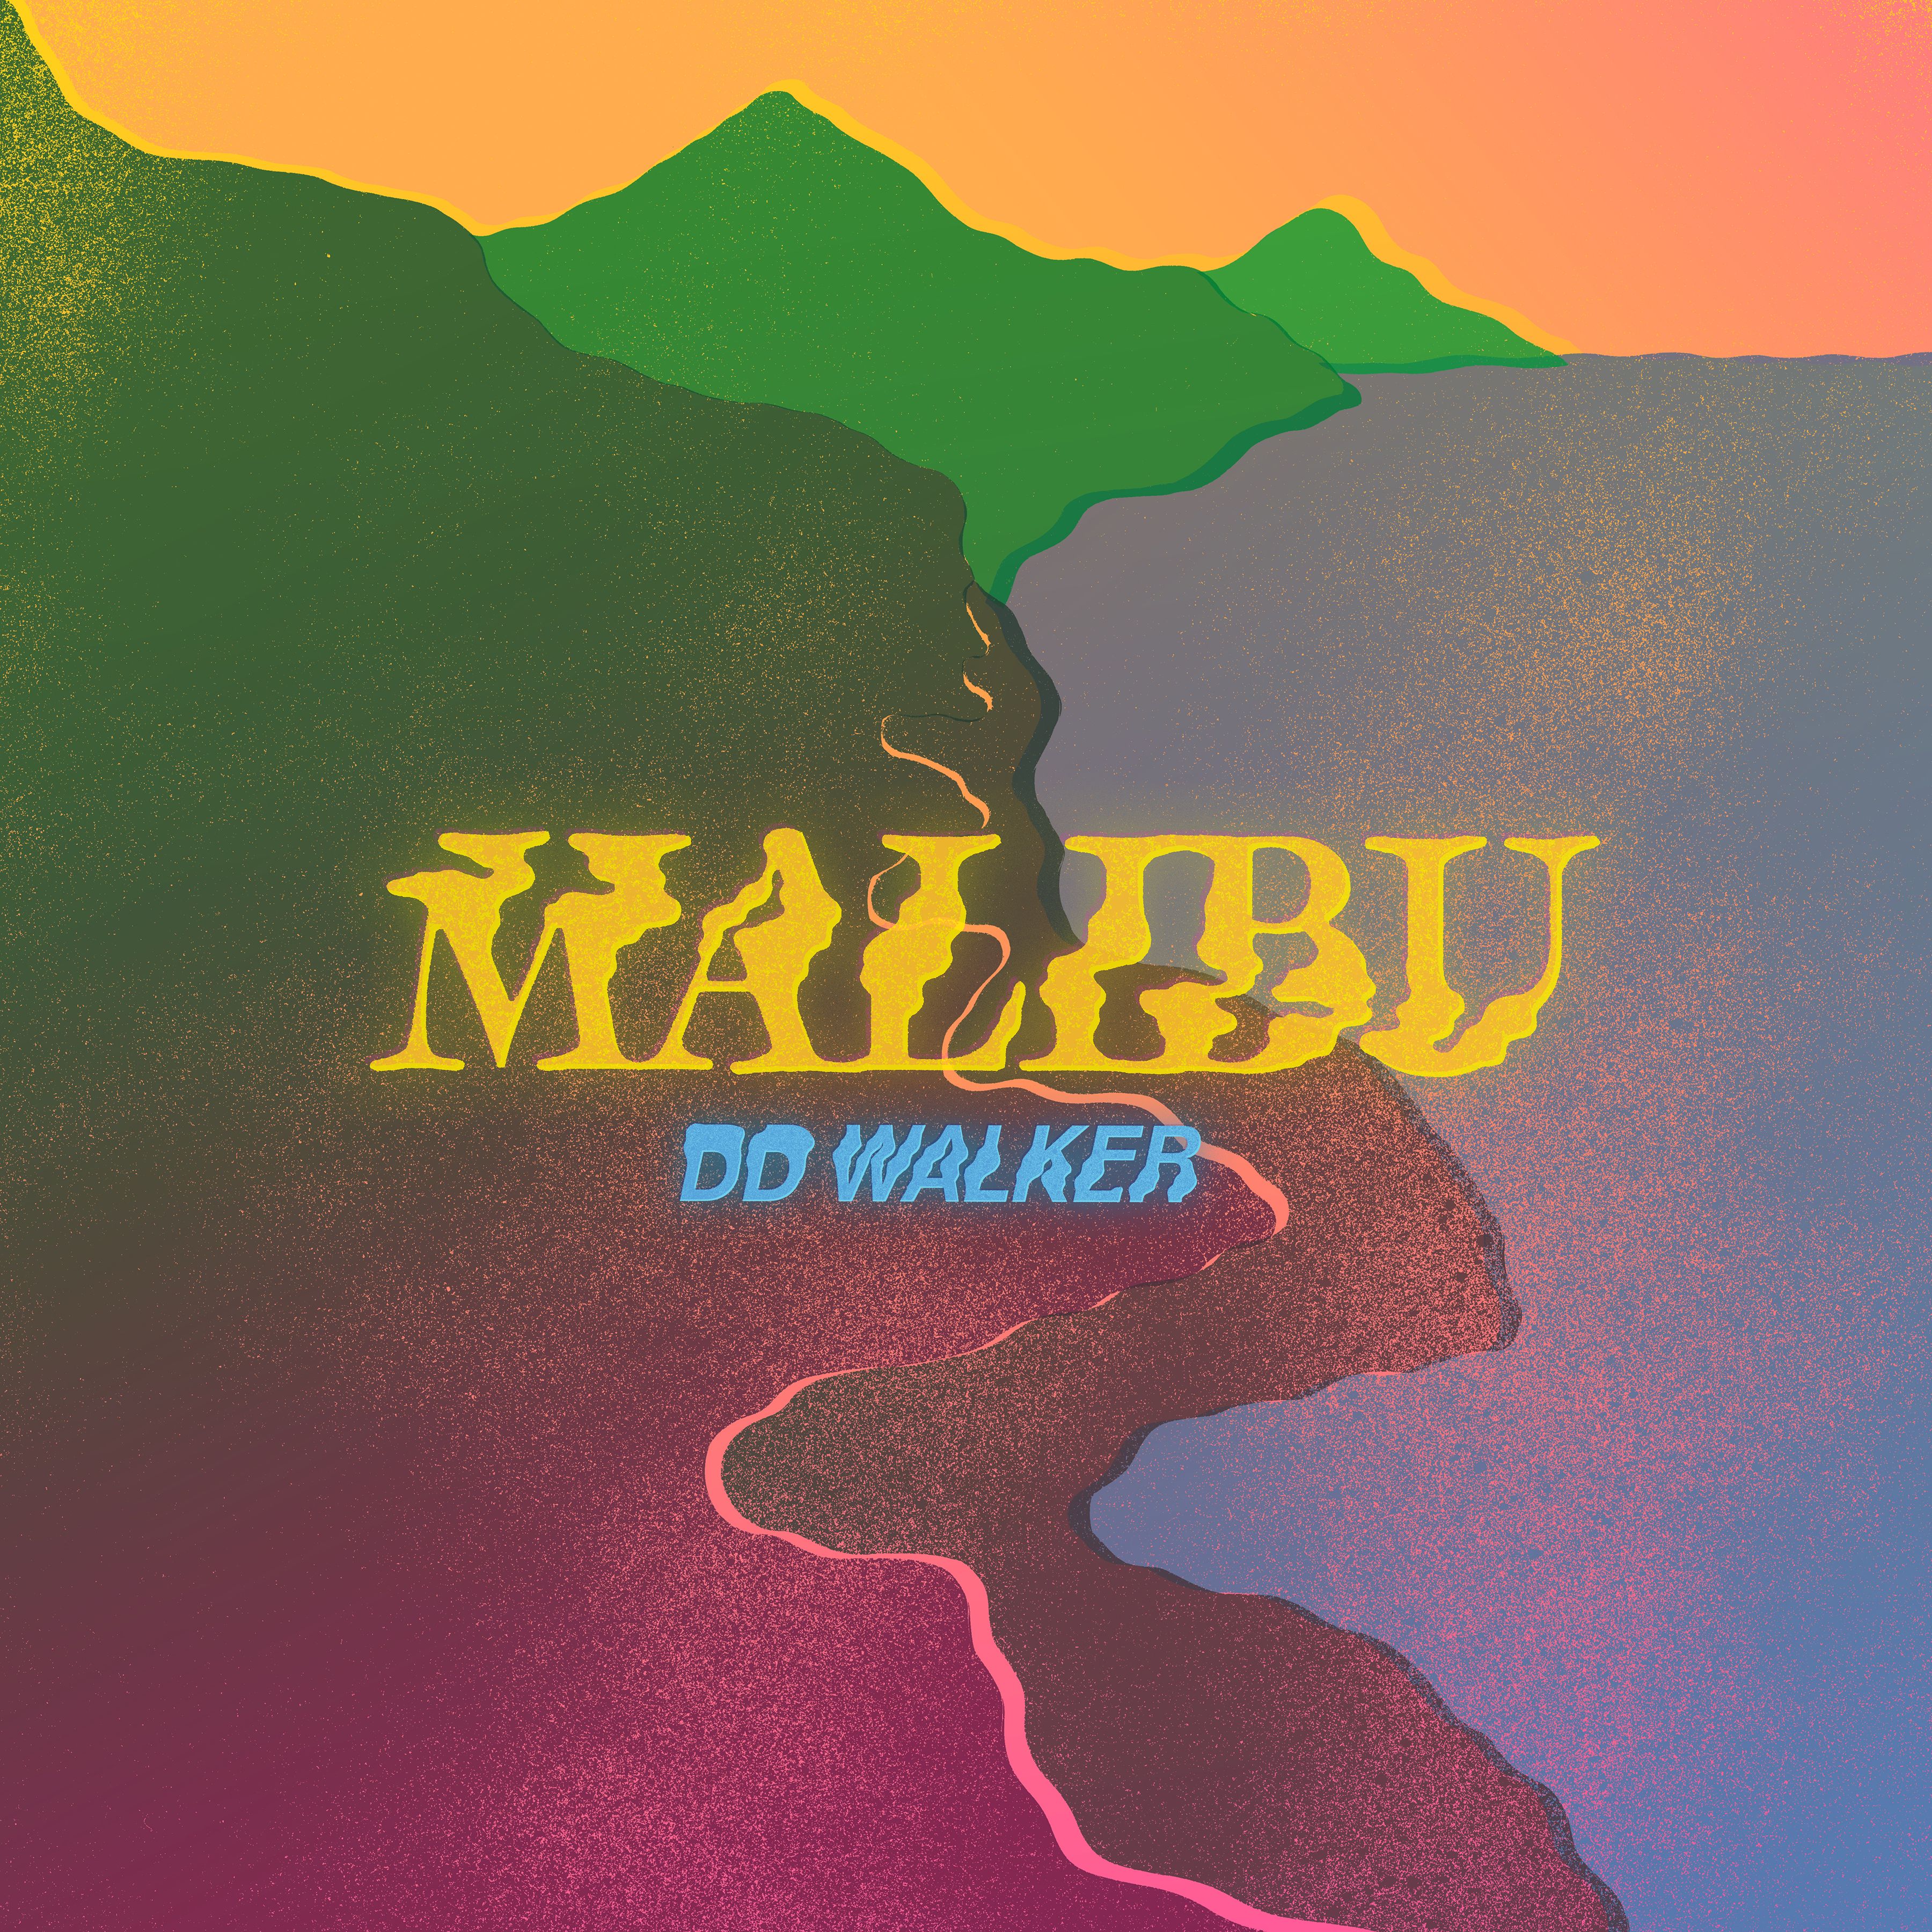 DD Walker – “Malibu”